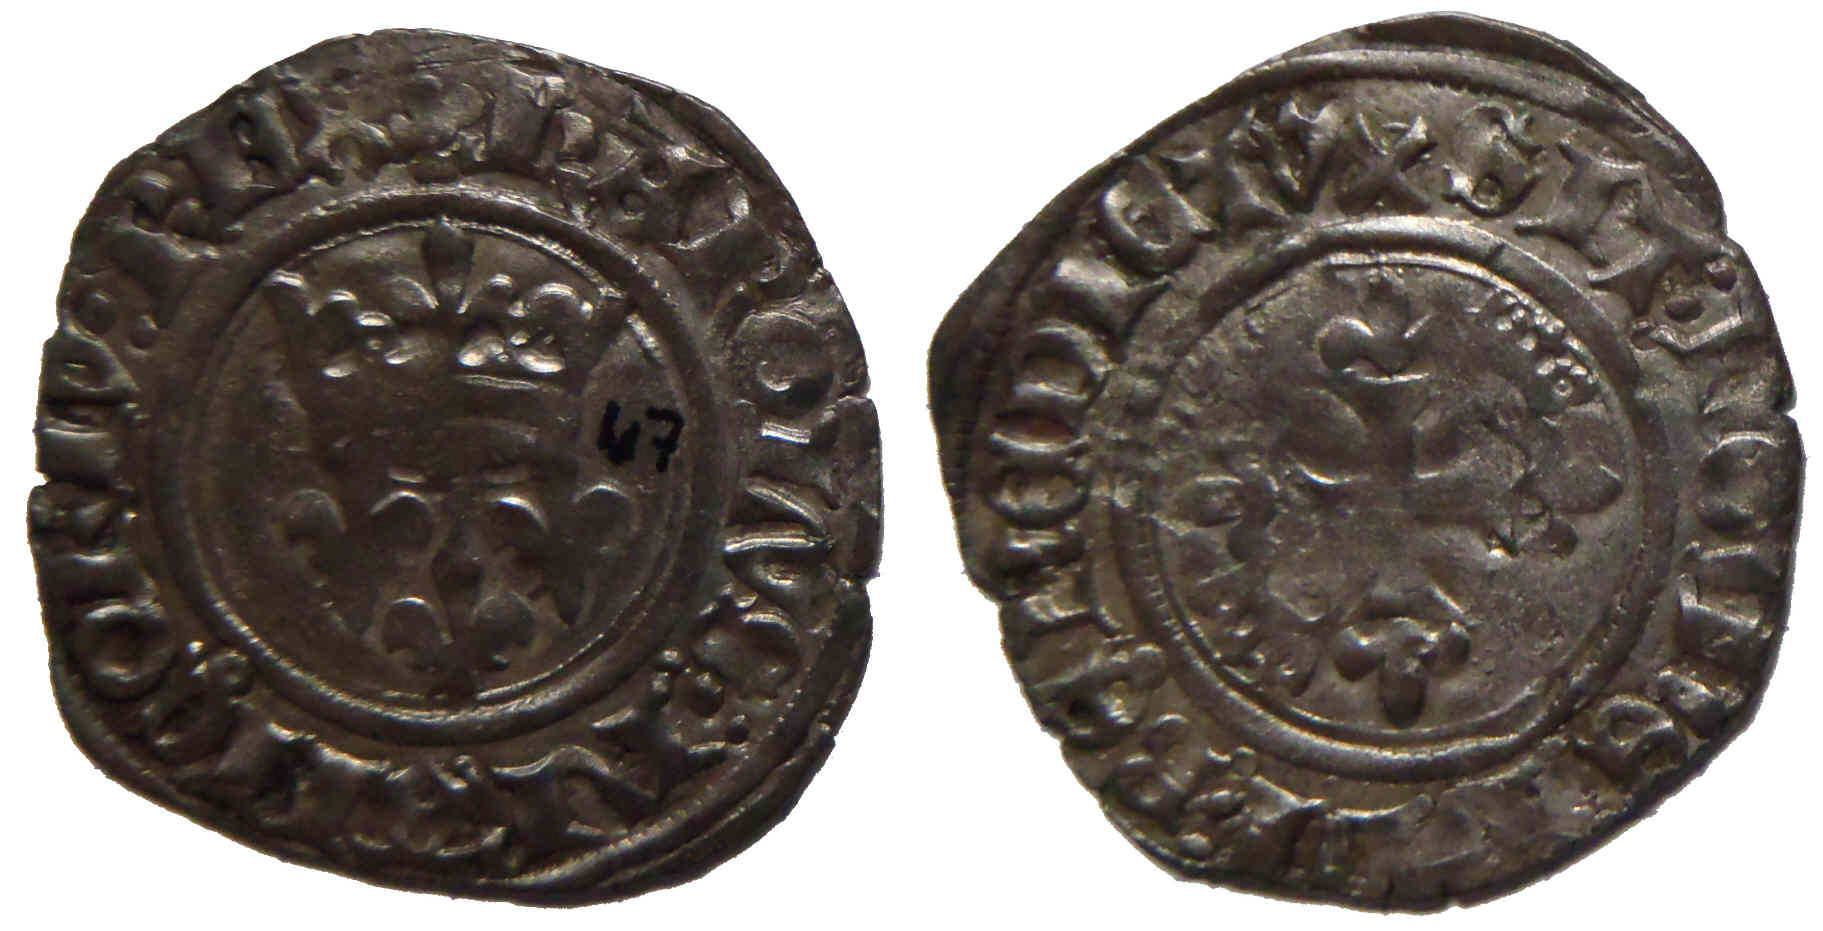 Approche typologique et chronologique des émissions de gros dits «florettes» au nom de Charles VI produites à Mâcon entre 1417 et 1421 – partie 11